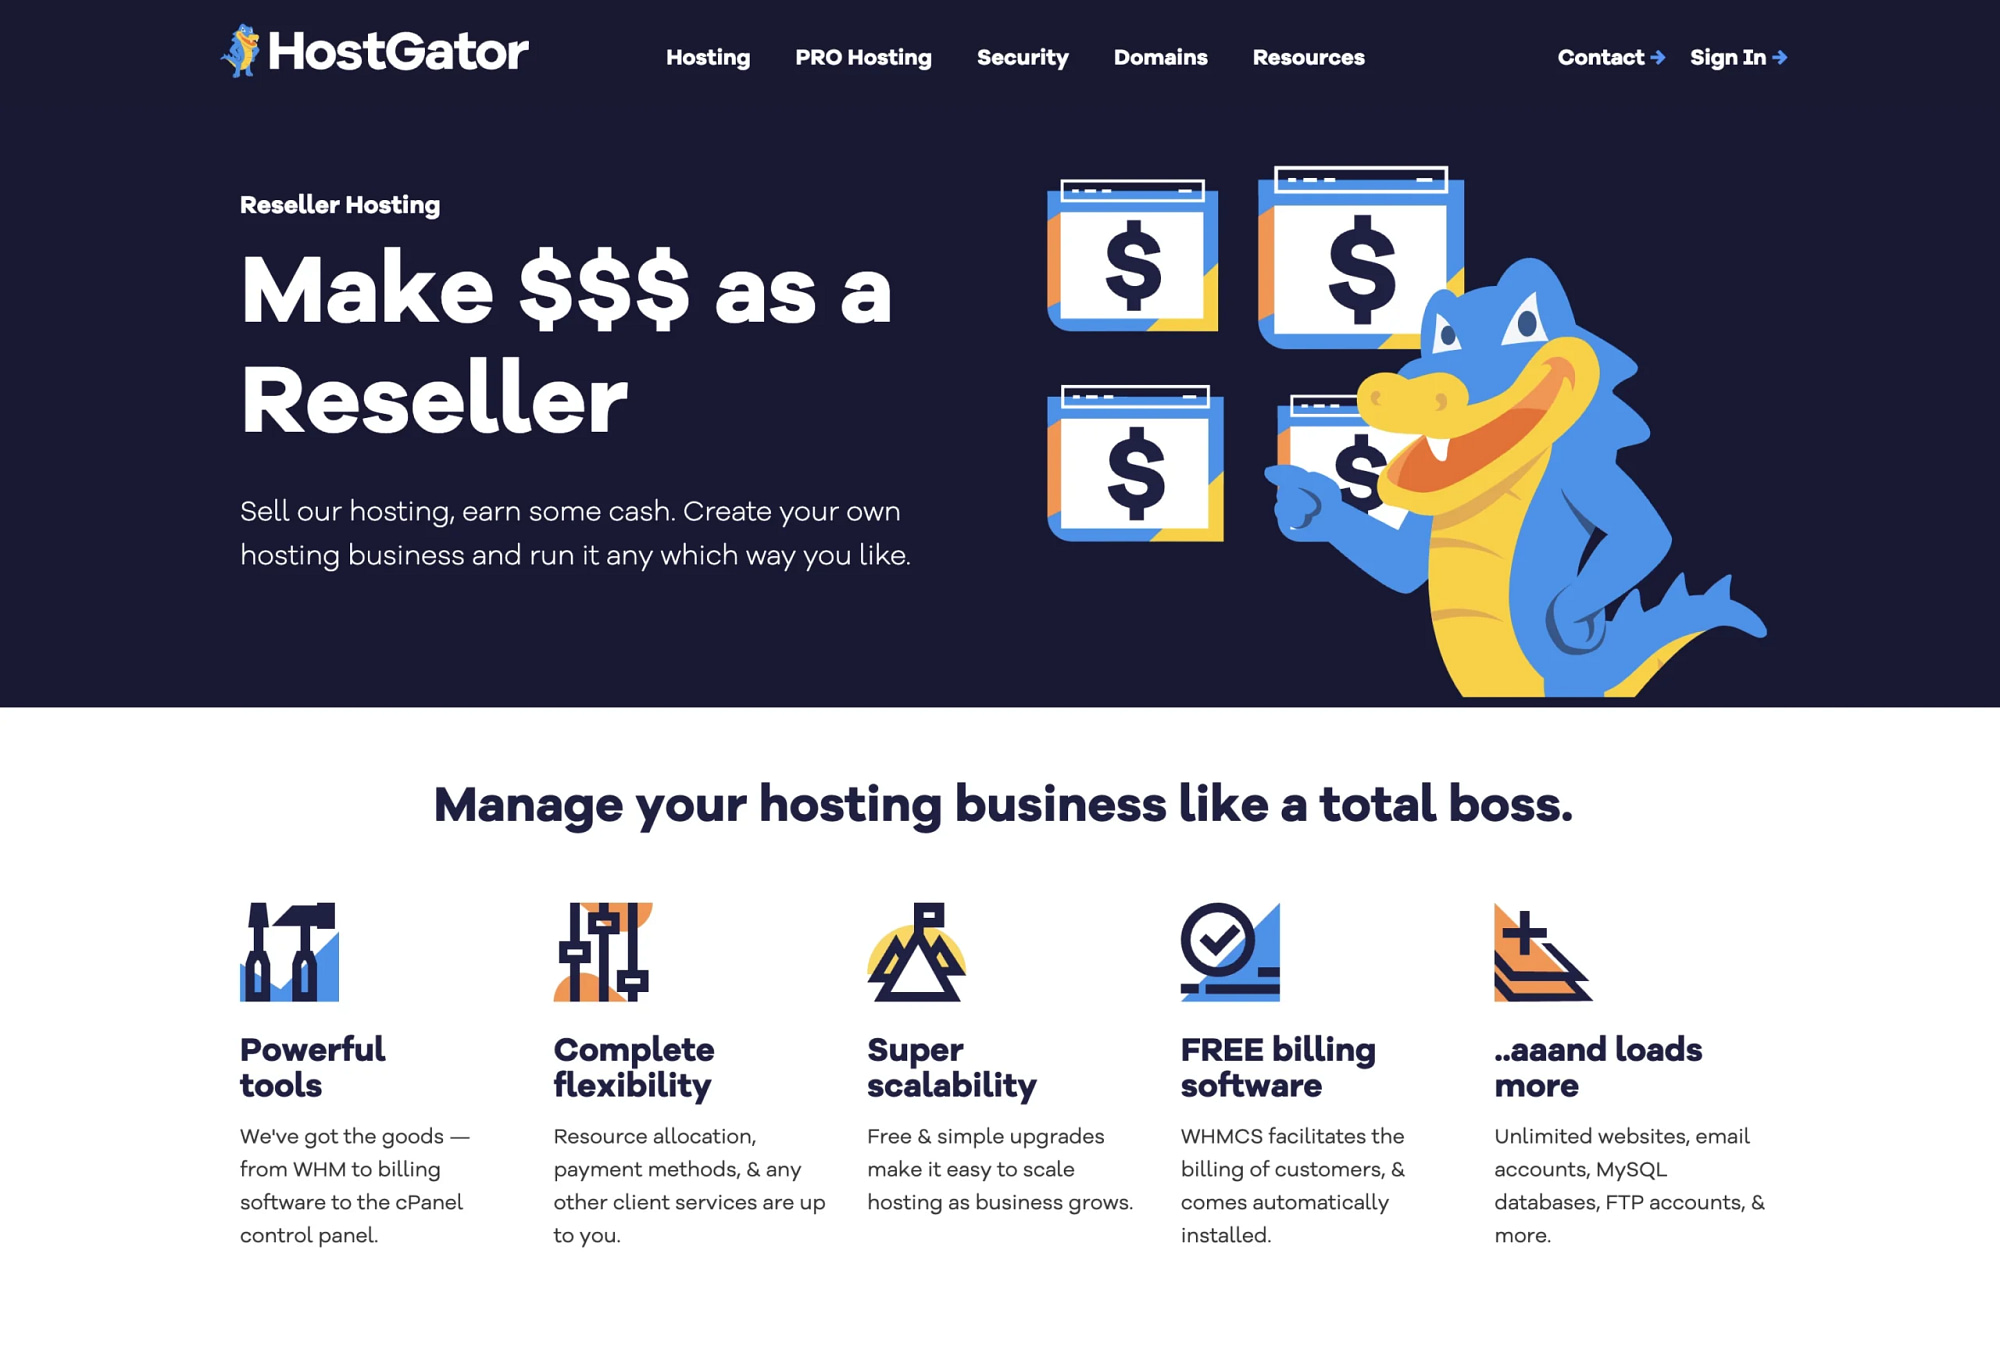 HostGator's reseller hosting page.